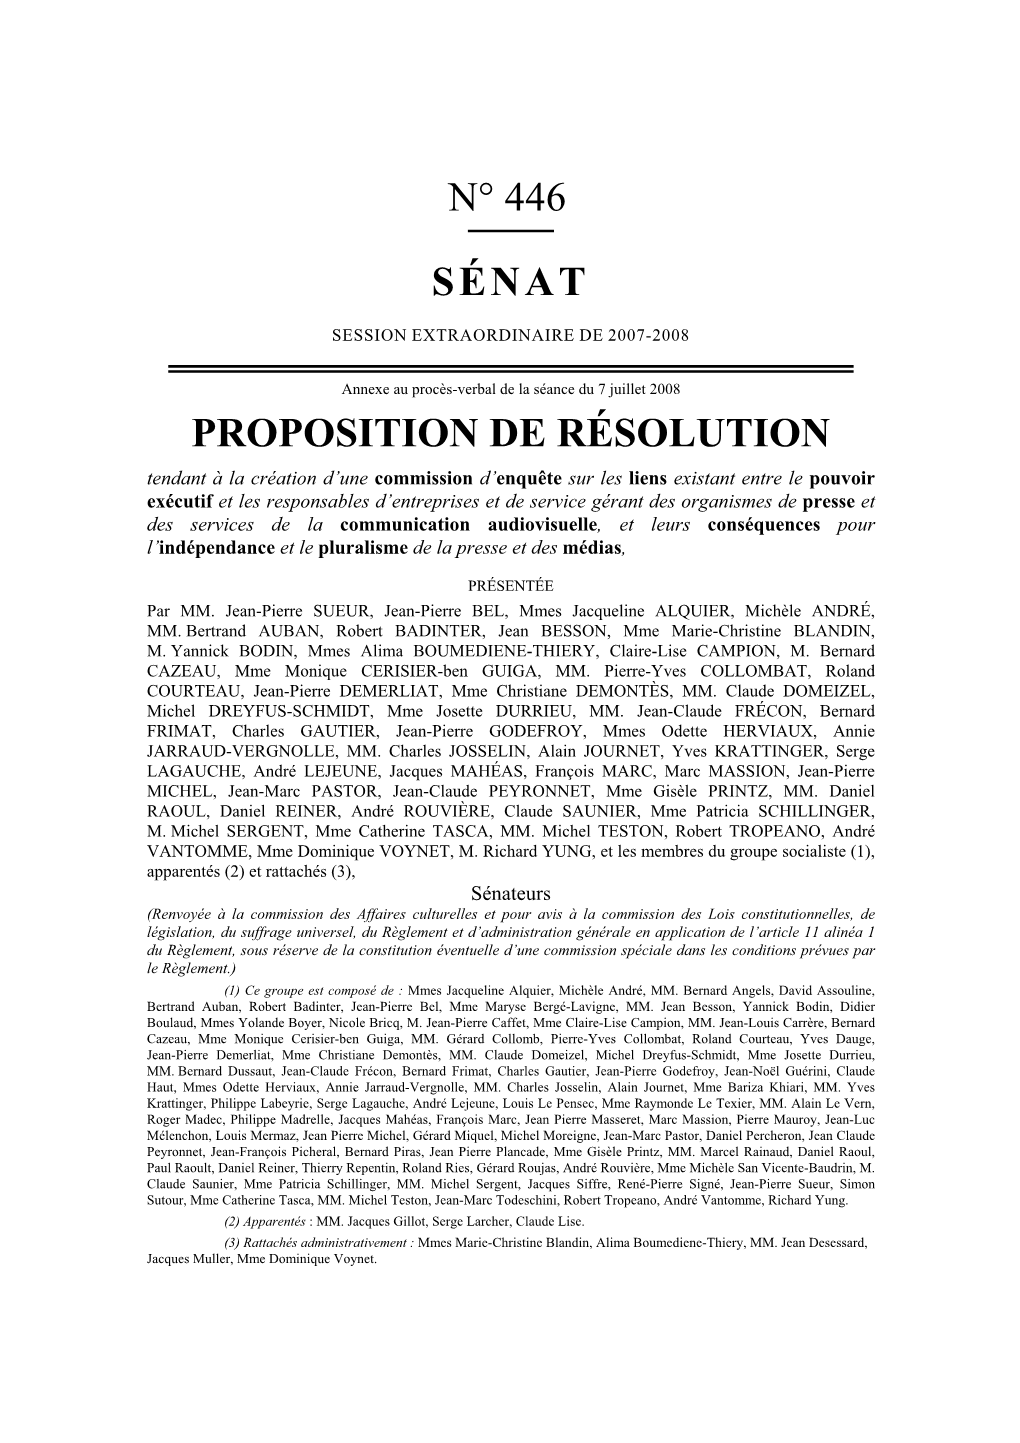 N° 446 Sénat Proposition De Résolution